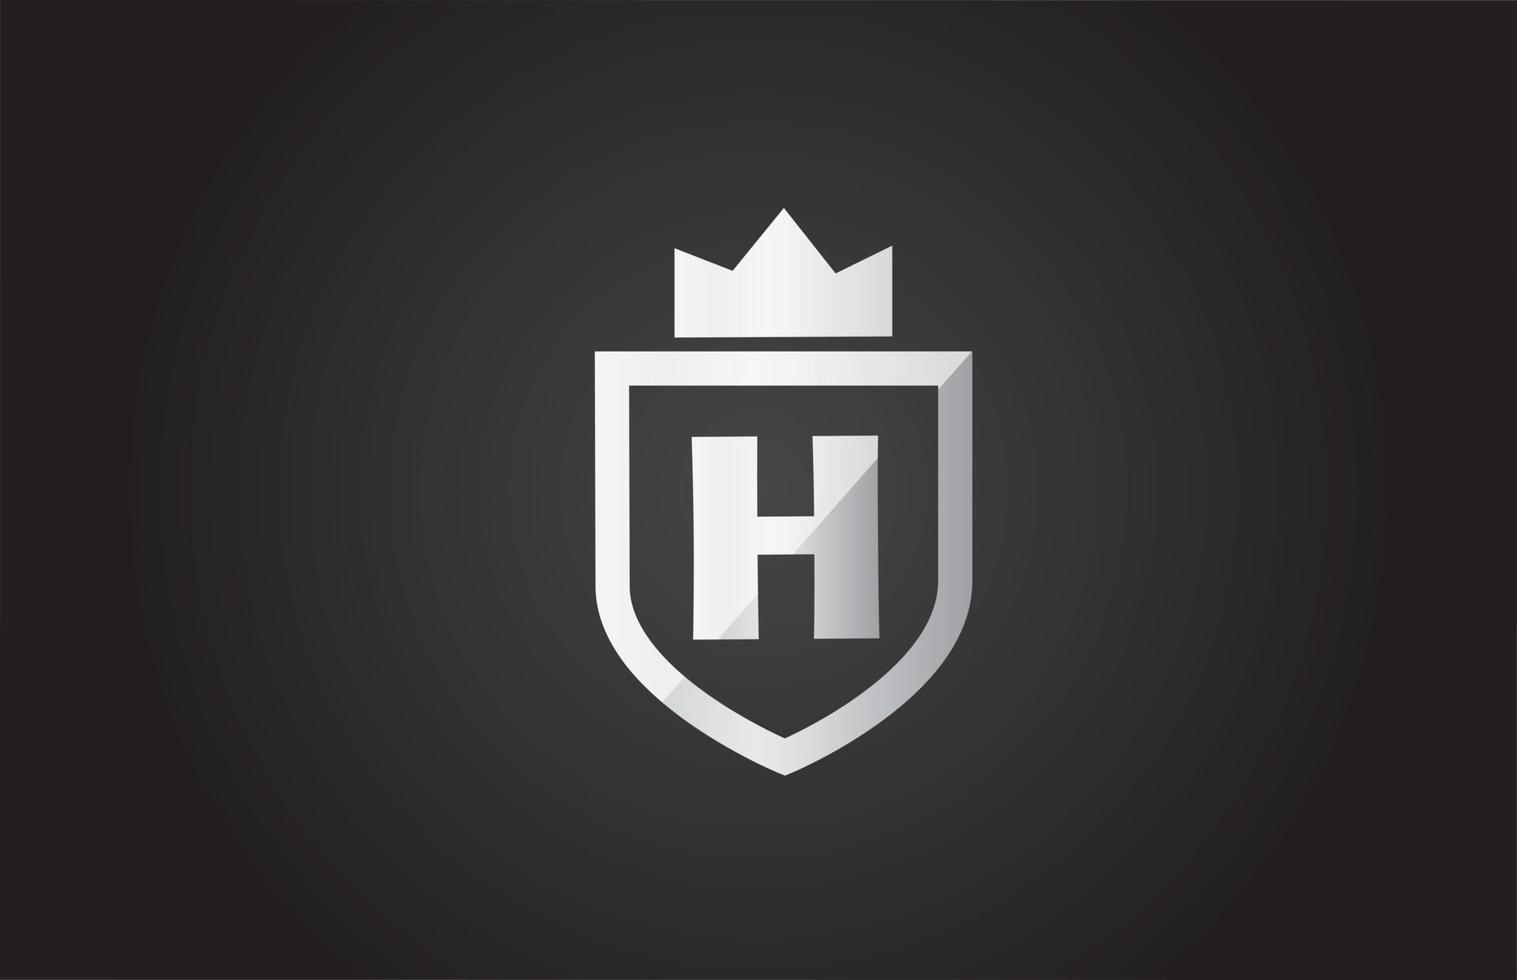 h alfabet letterpictogram logo in grijze en zwarte kleur. schildontwerp voor bedrijfsidentiteit met koningskroon vector